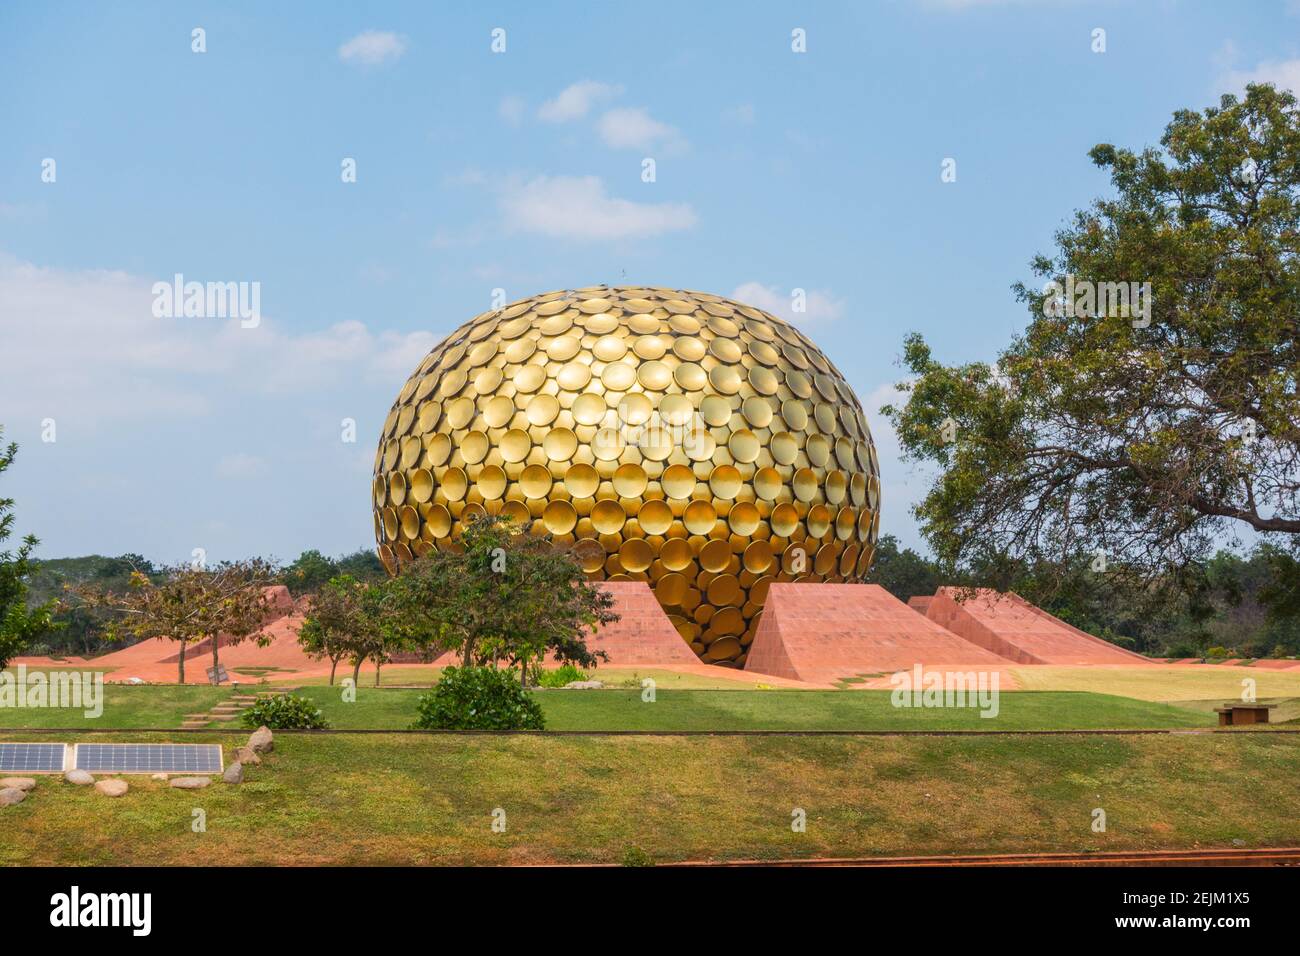 Matrimandir in Auroville established by Mira Alfassa 'The Mother' in Pondicherry or Pudhucherry, Tamil Nadu, India Stock Photo